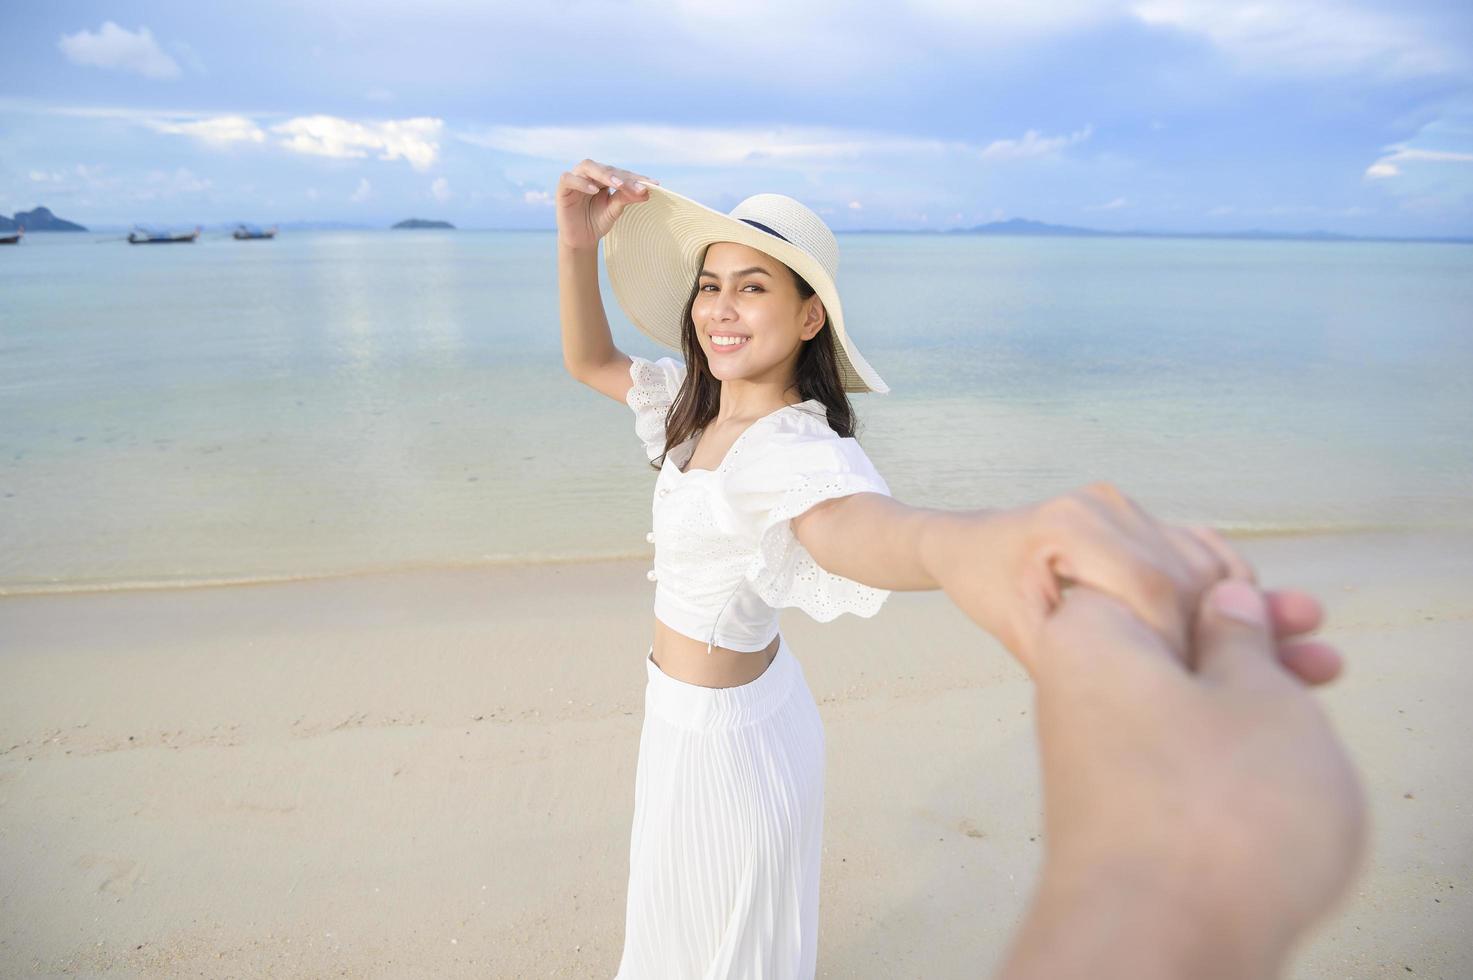 una bella donna felice in abito bianco che si gode e si rilassa sul concetto di spiaggia, estate e vacanze foto